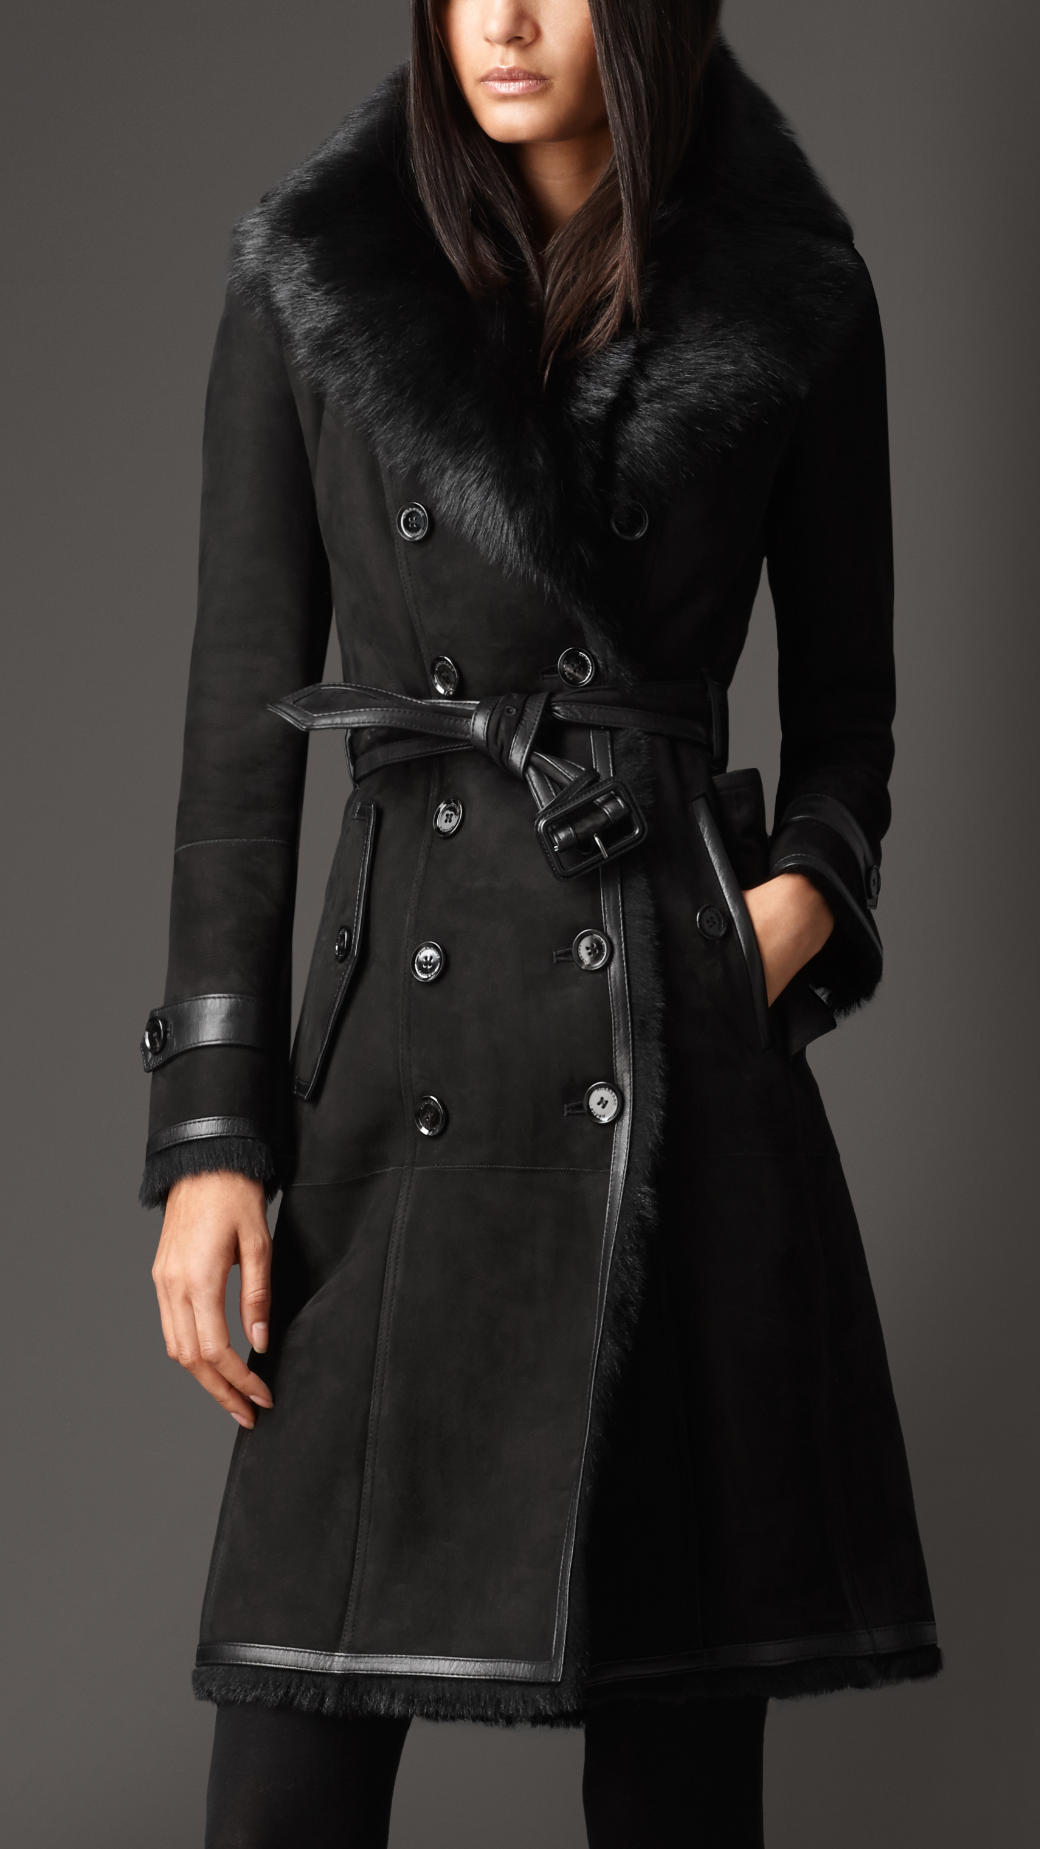 burberry women's winter coats